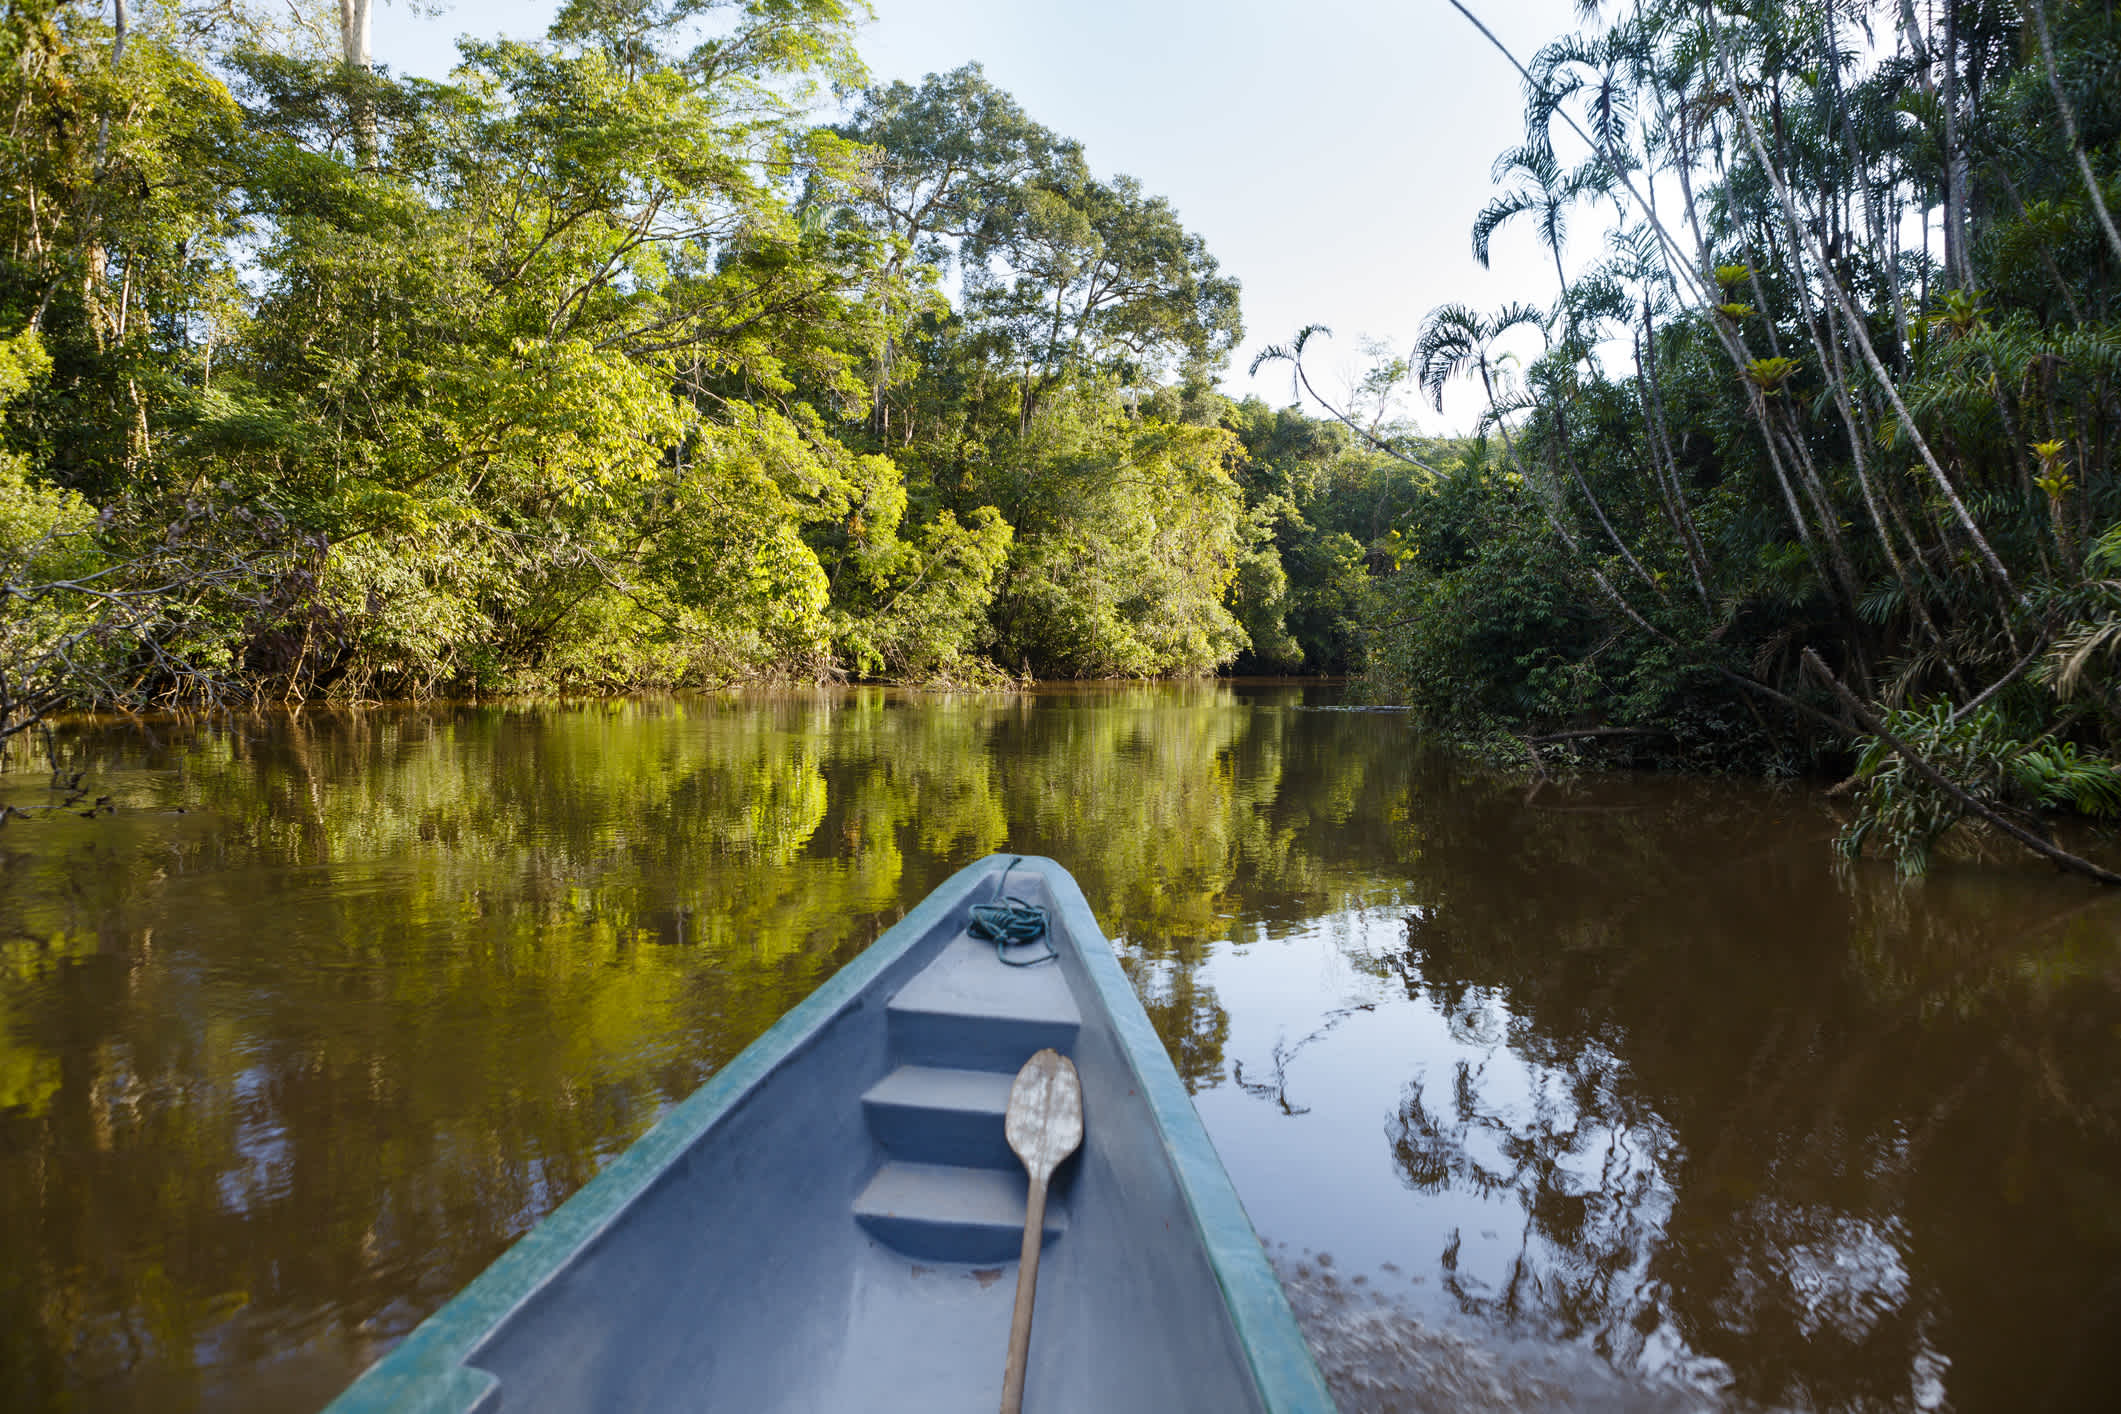 Pirogue bleu sur la rivière dans la jungle, en Équateur.